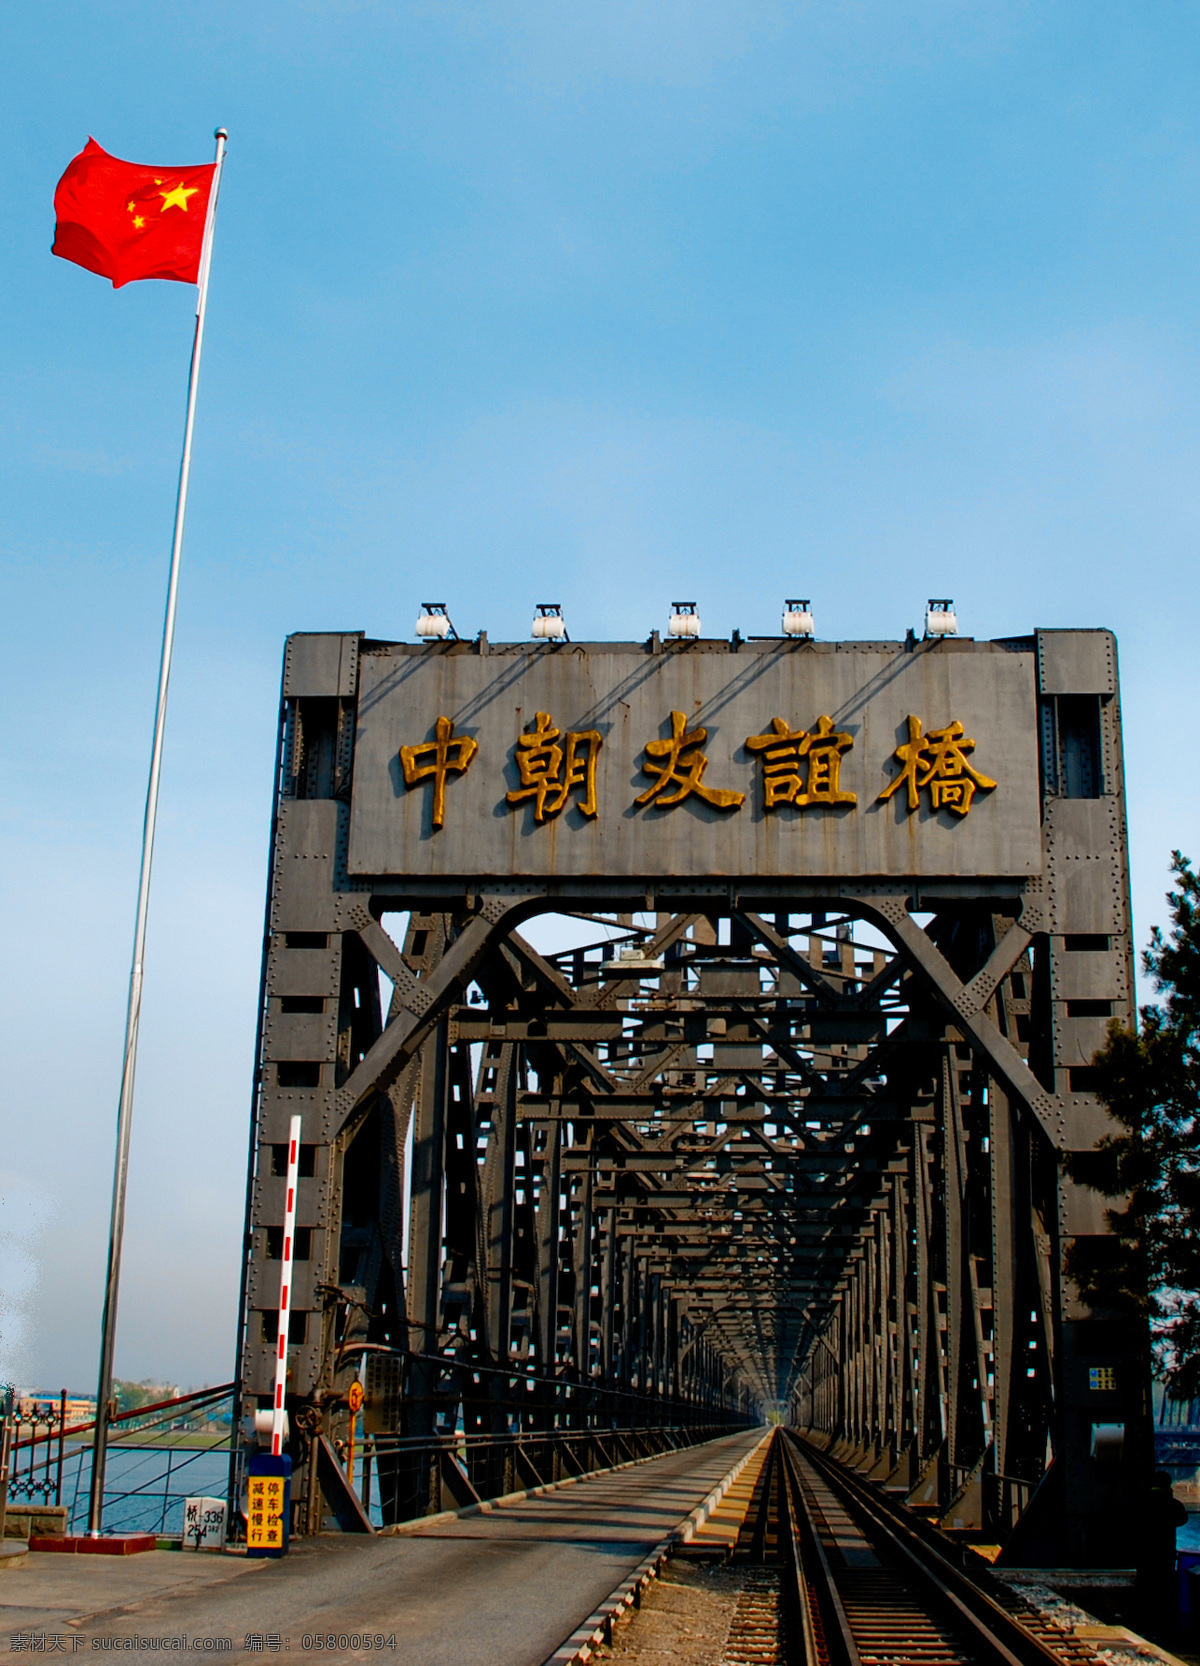 朝鲜 国内旅游 国旗 蓝天 旅游摄影 摄影图库 中国 中国联通 铁路桥 边境 边关 psd源文件